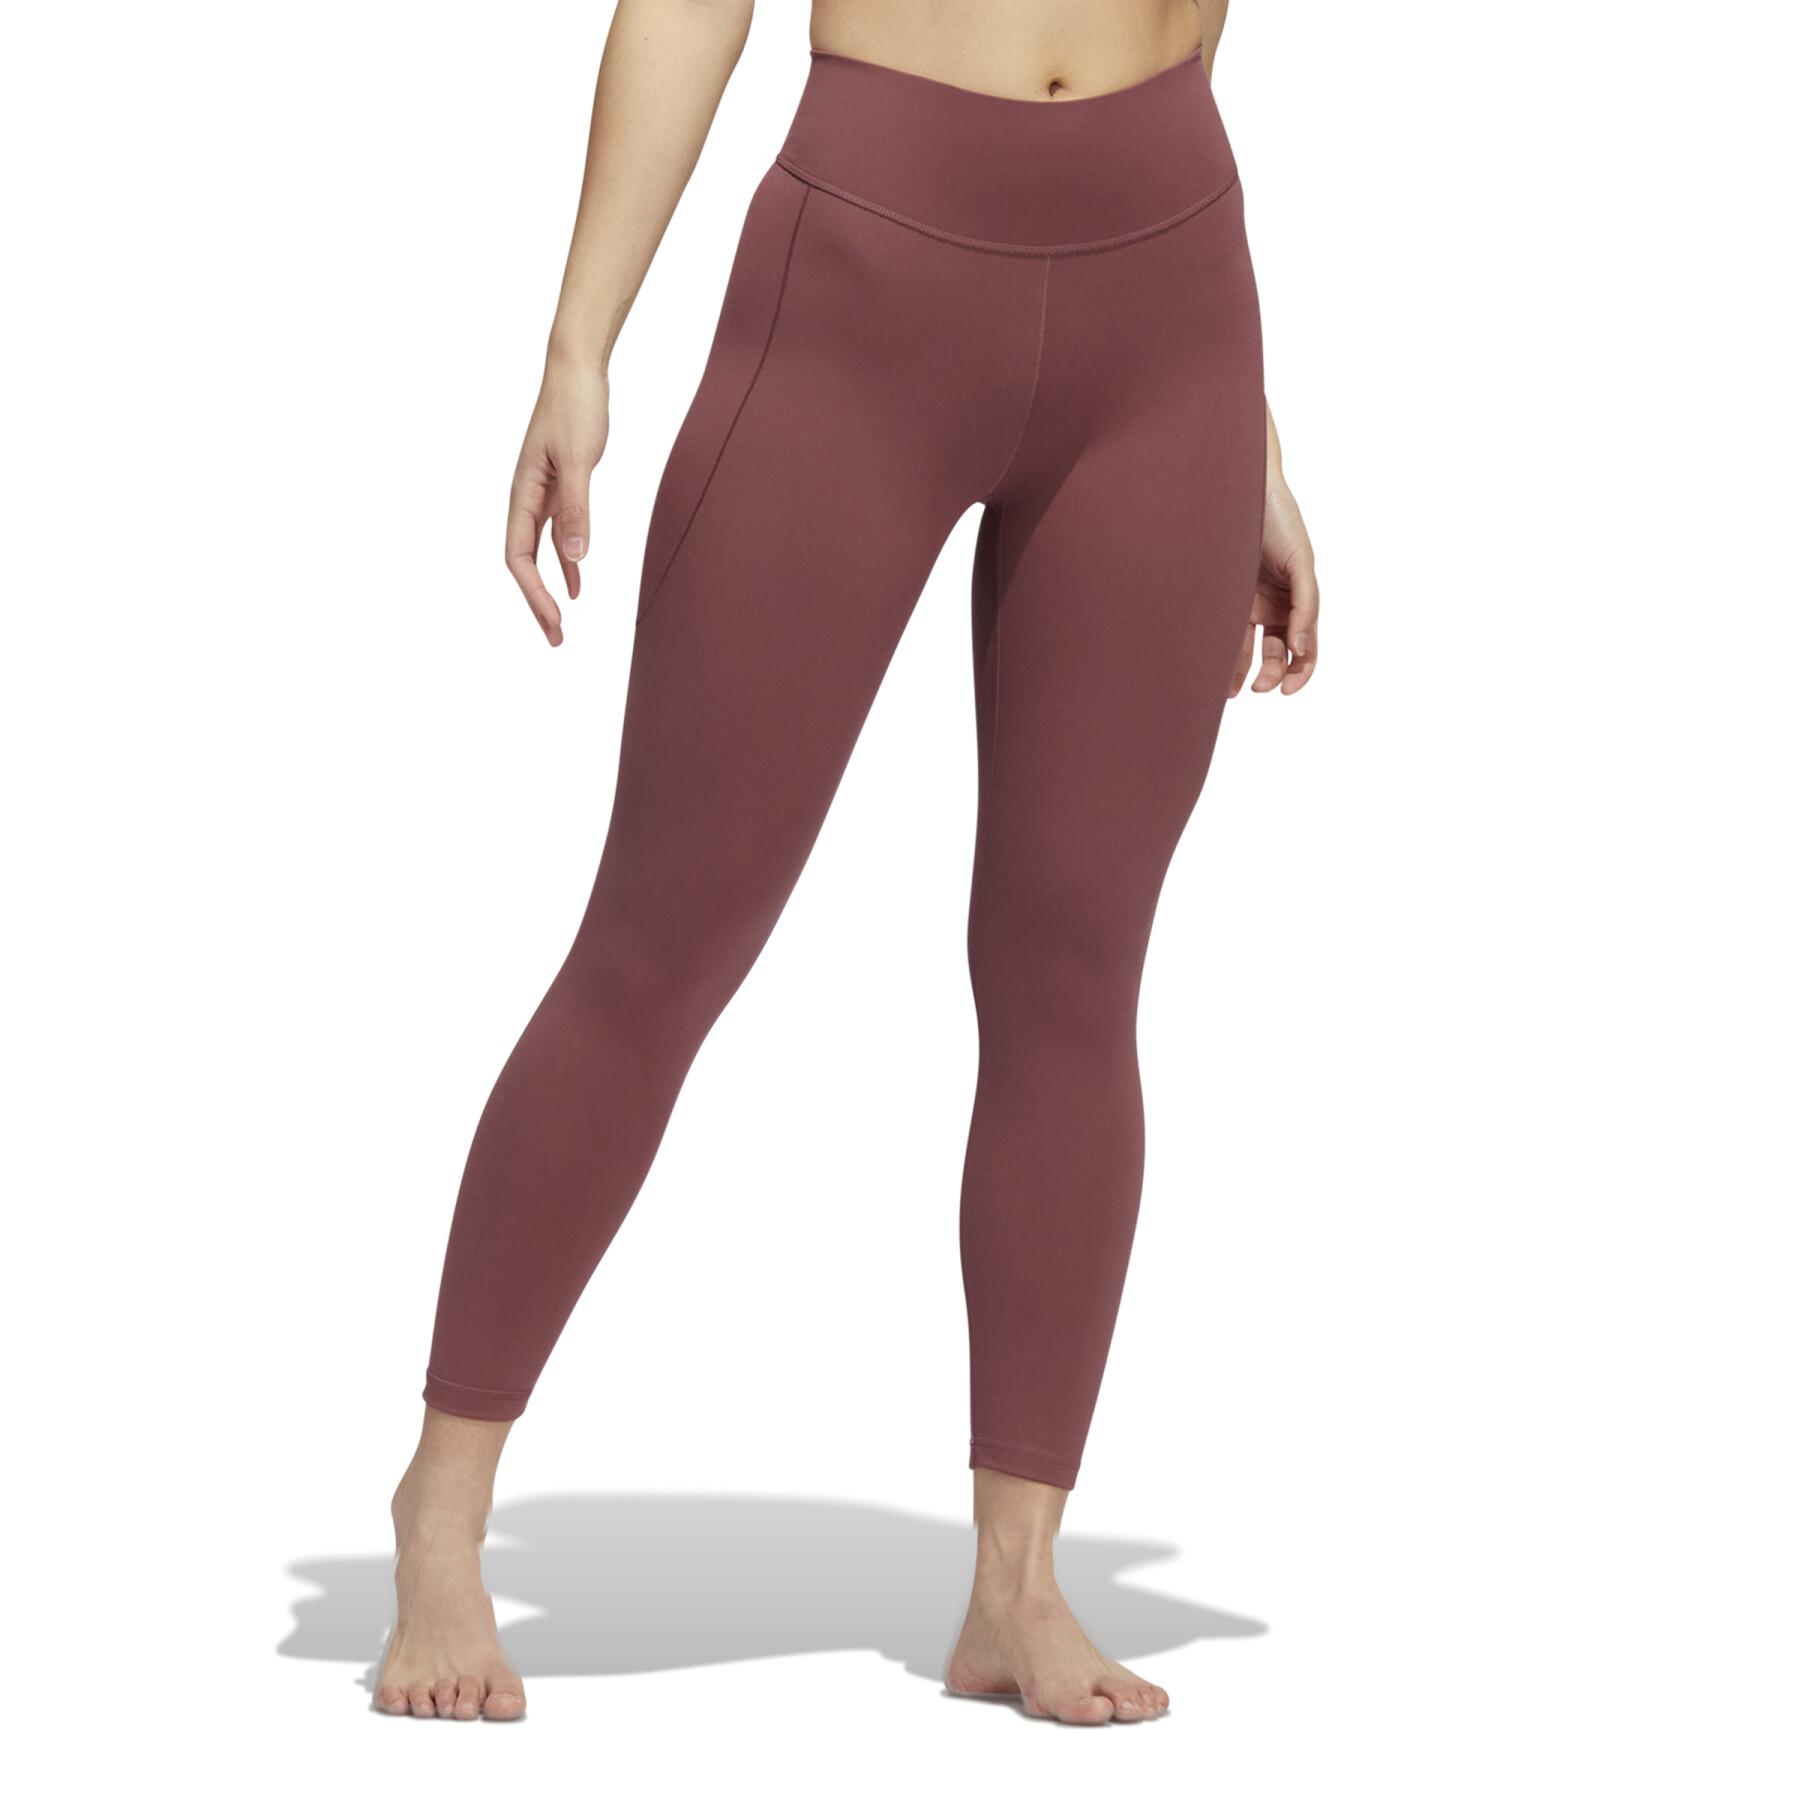 Legging femme adidas Yoga Studio